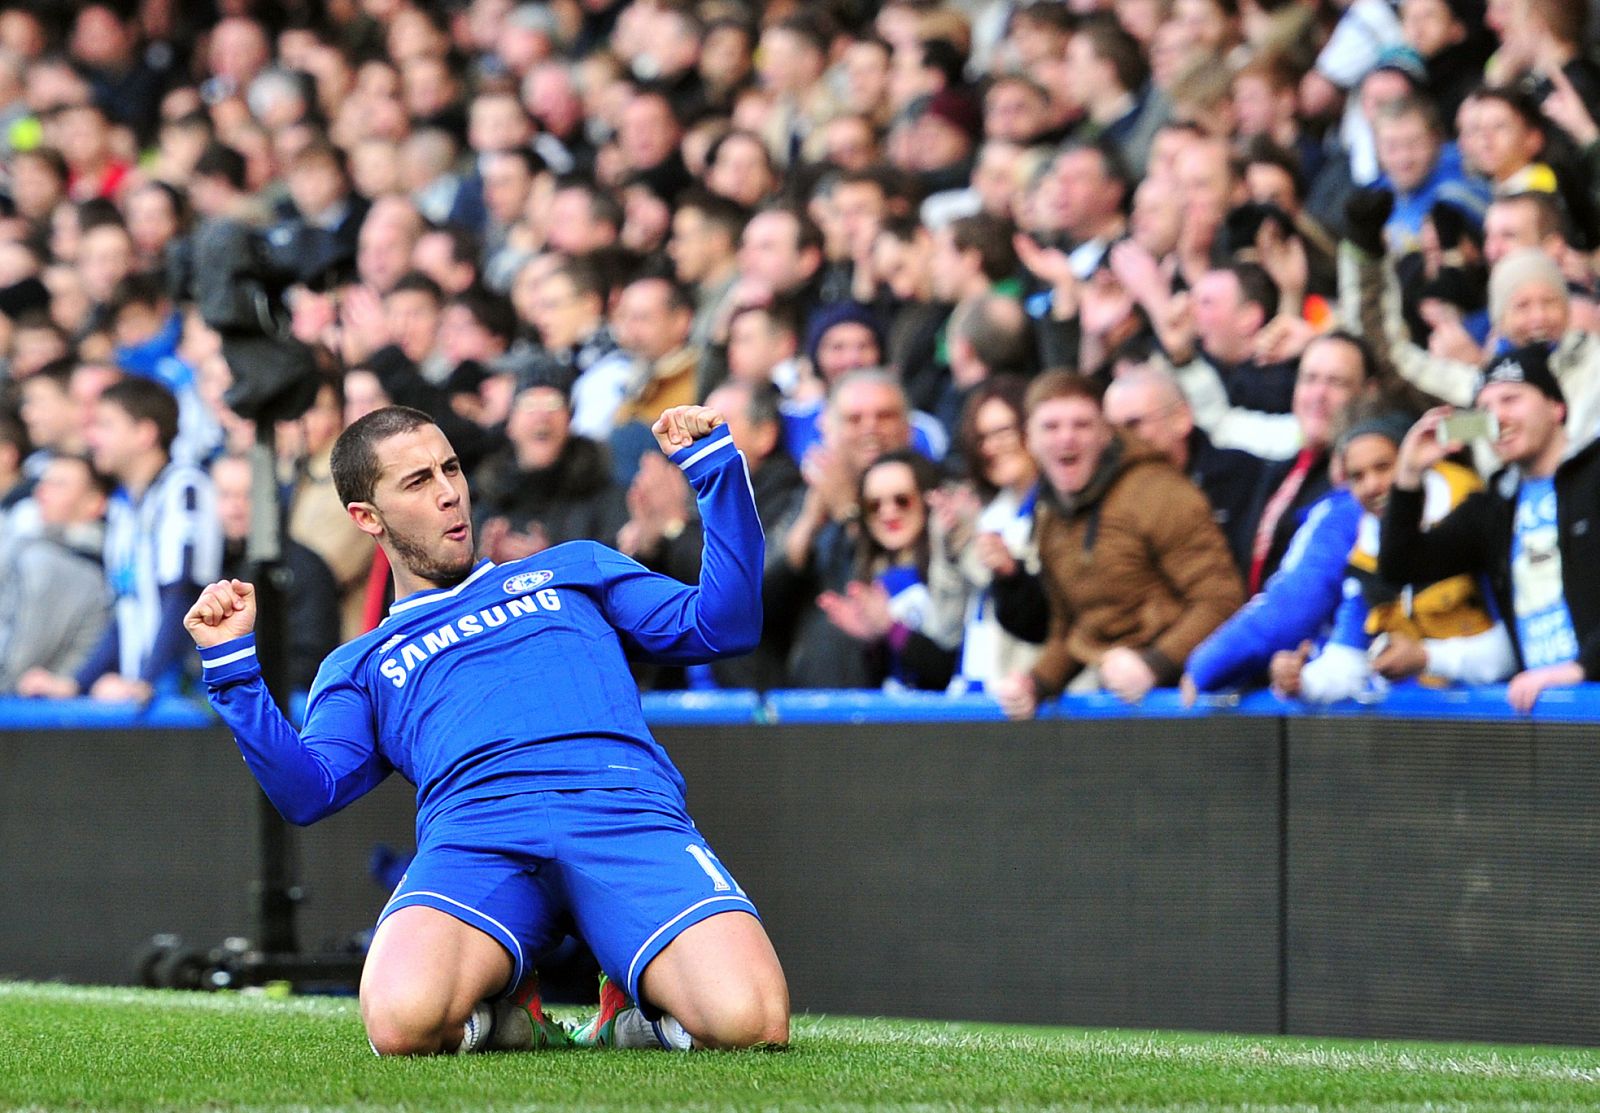 El jugador del Chelsea, Eden Hazard, celebra uno de los tres goles que ha marcado al Newcastle.